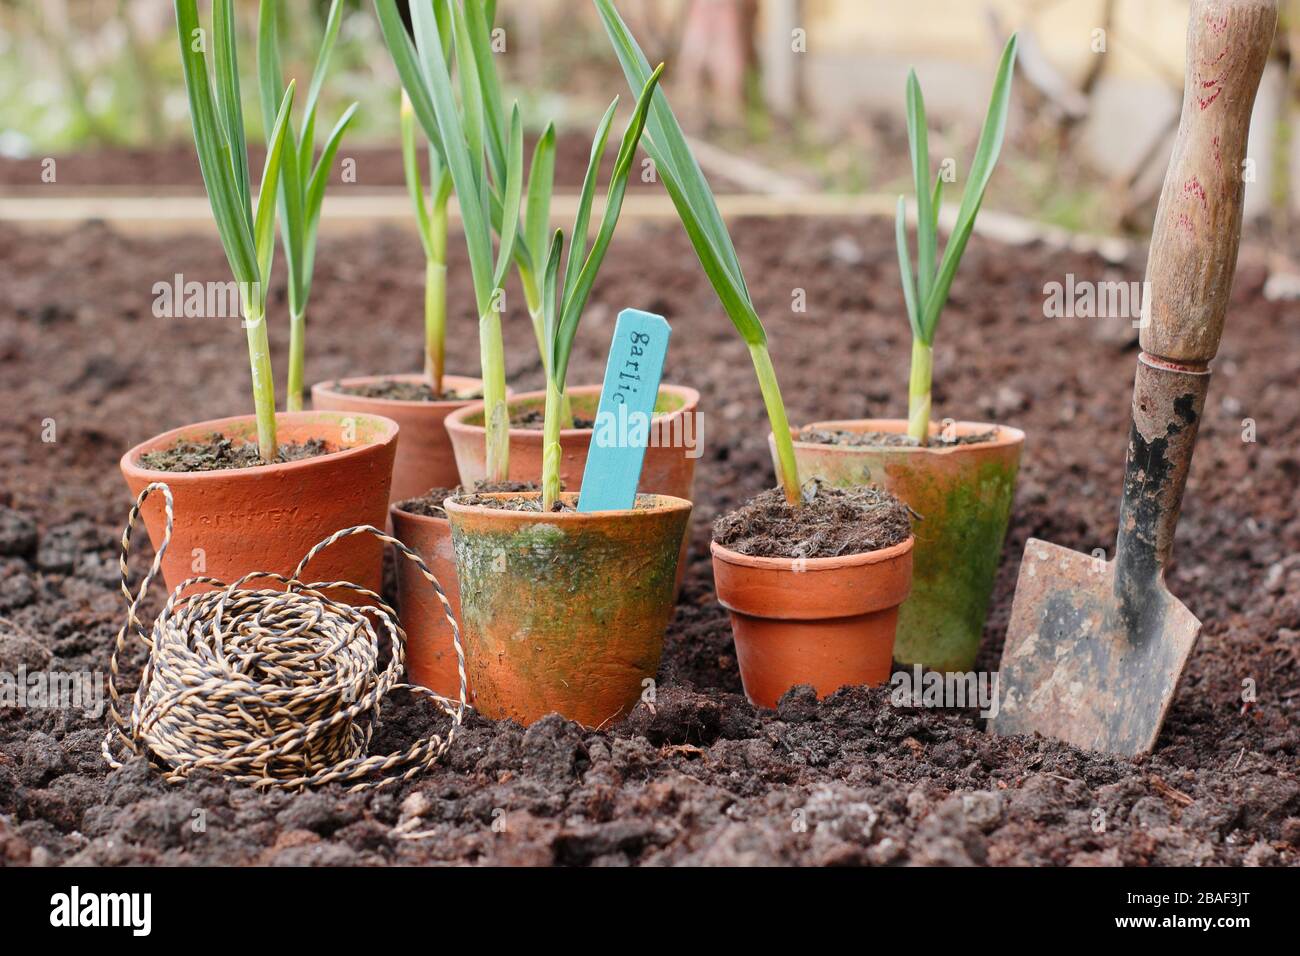 Allium sativum 'Lautrec Wight' ail à col rigide. Planter de jeunes plants d'ail dans un lit surélevé au printemps. ROYAUME-UNI Banque D'Images